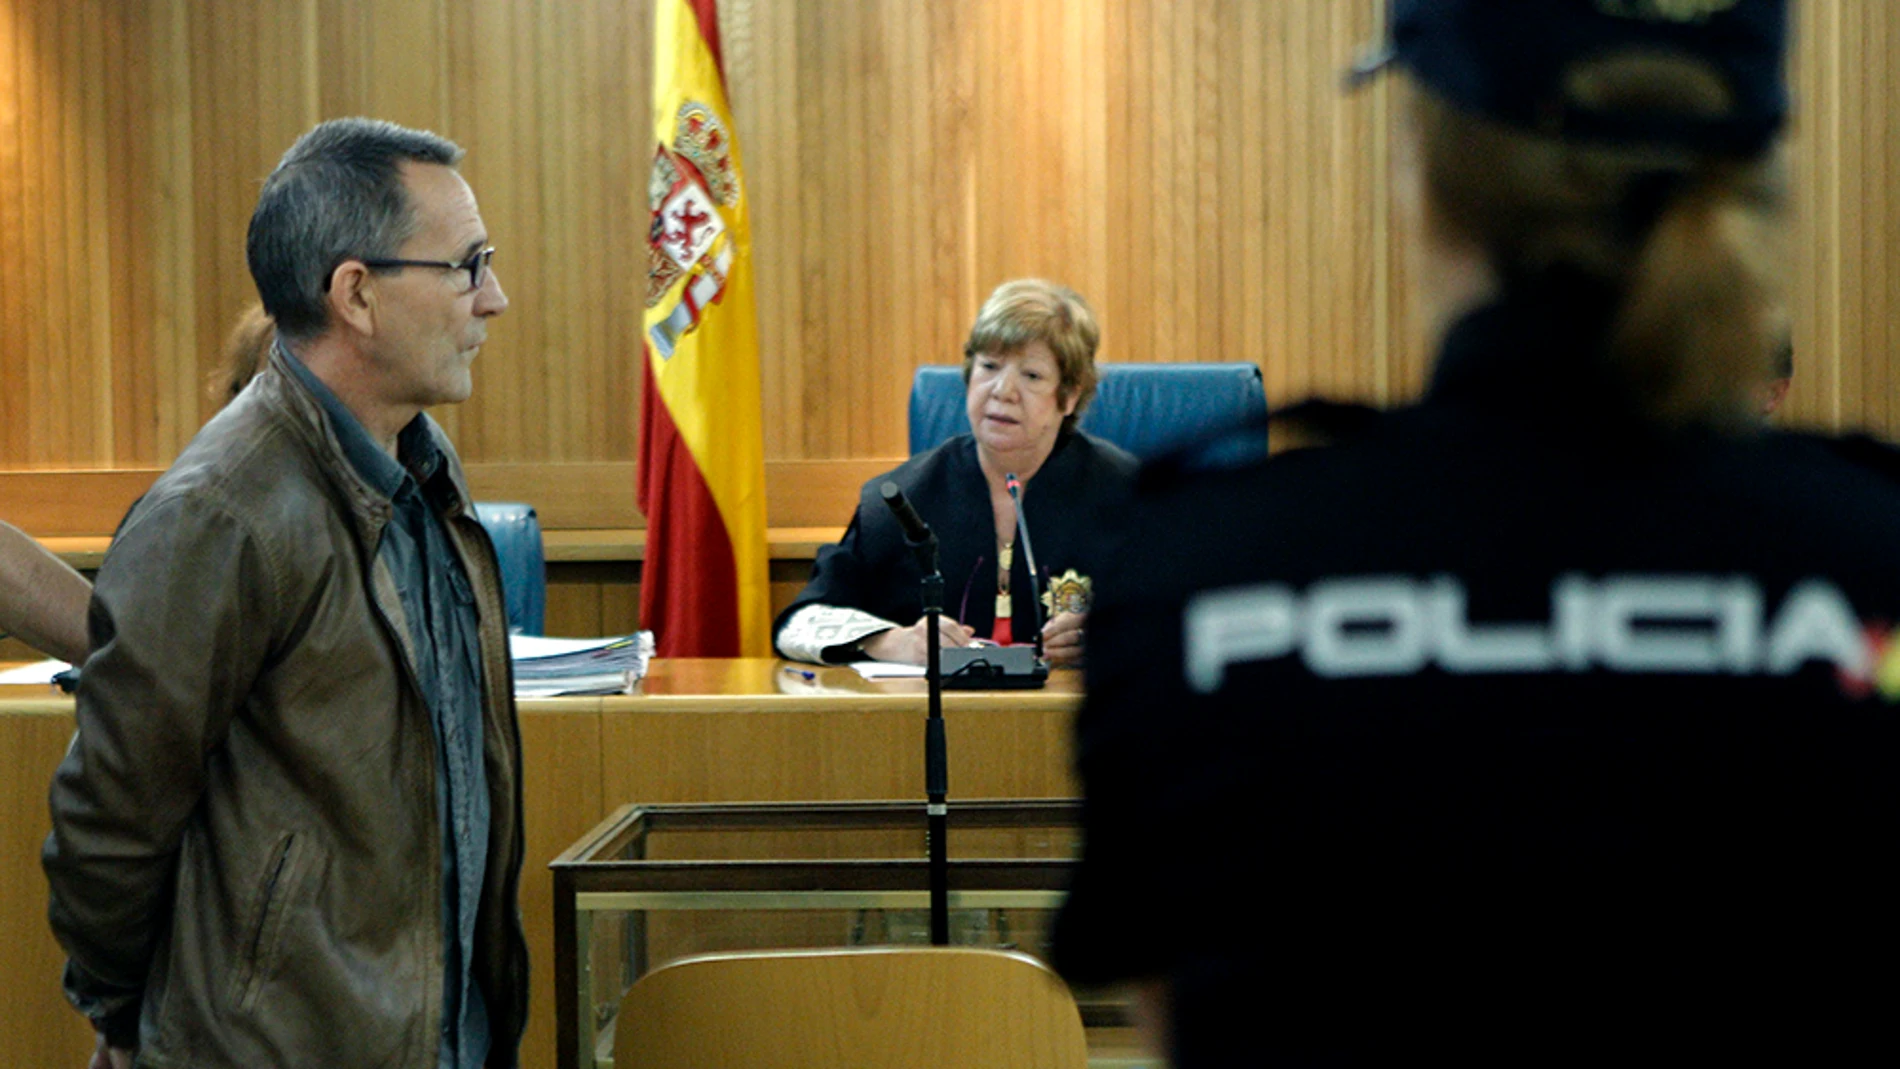 El miembro de los GRAPO Fernando Silva Sande en un juicio 